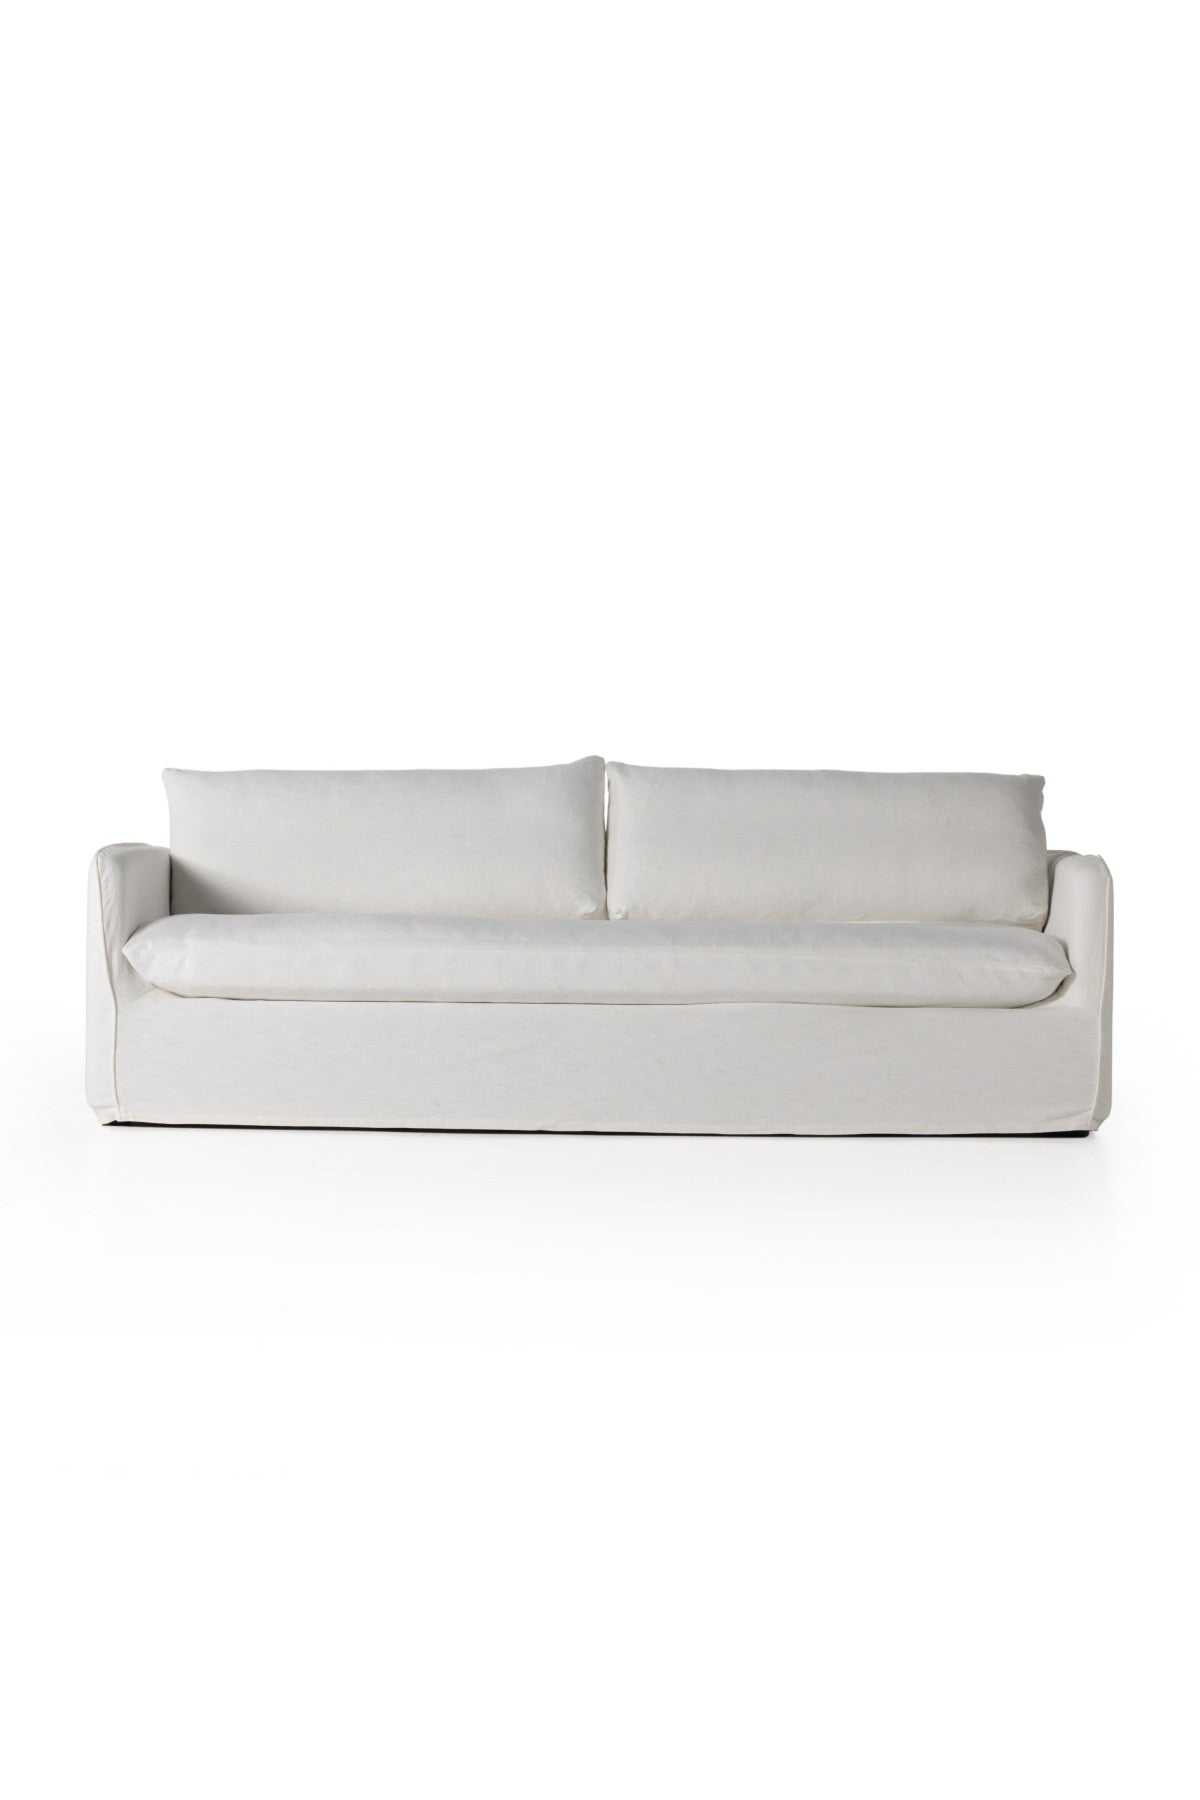 Cotton Bull Denim for Slipcovers | Slip covers couch, Couch covers  slipcovers, Slipcovered sofa